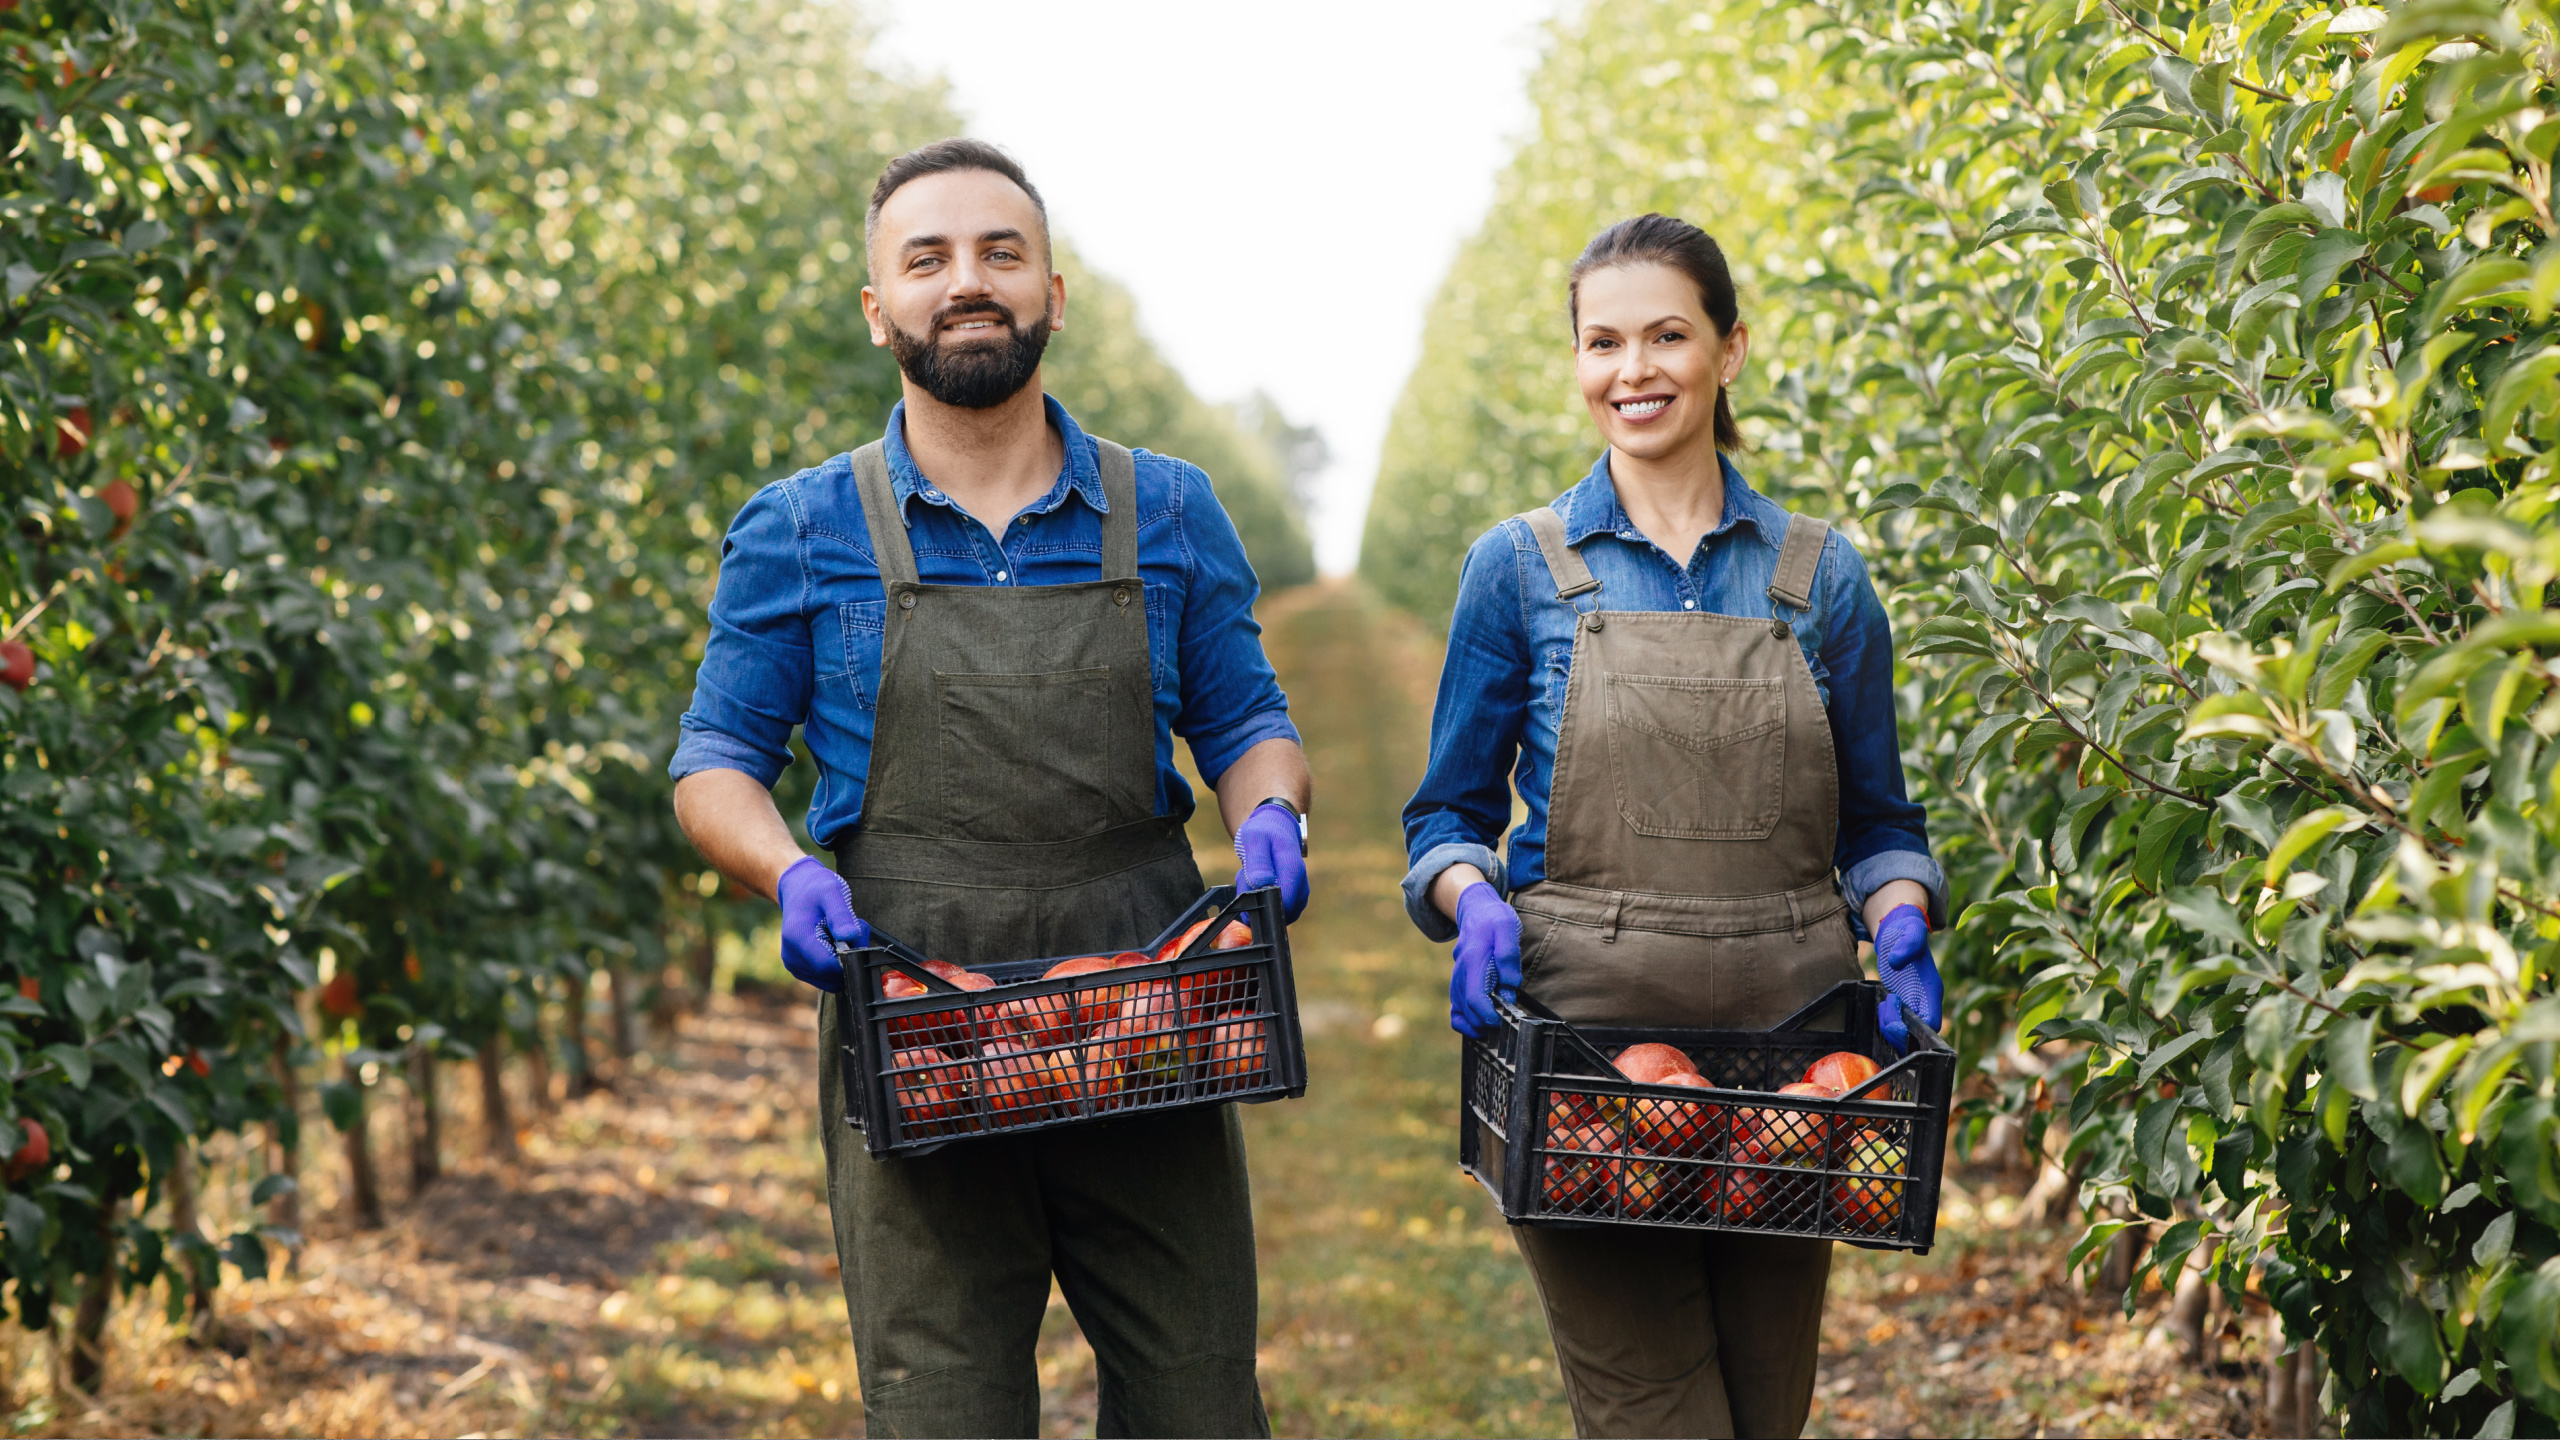 Fruit Picker Jobs: Requirements